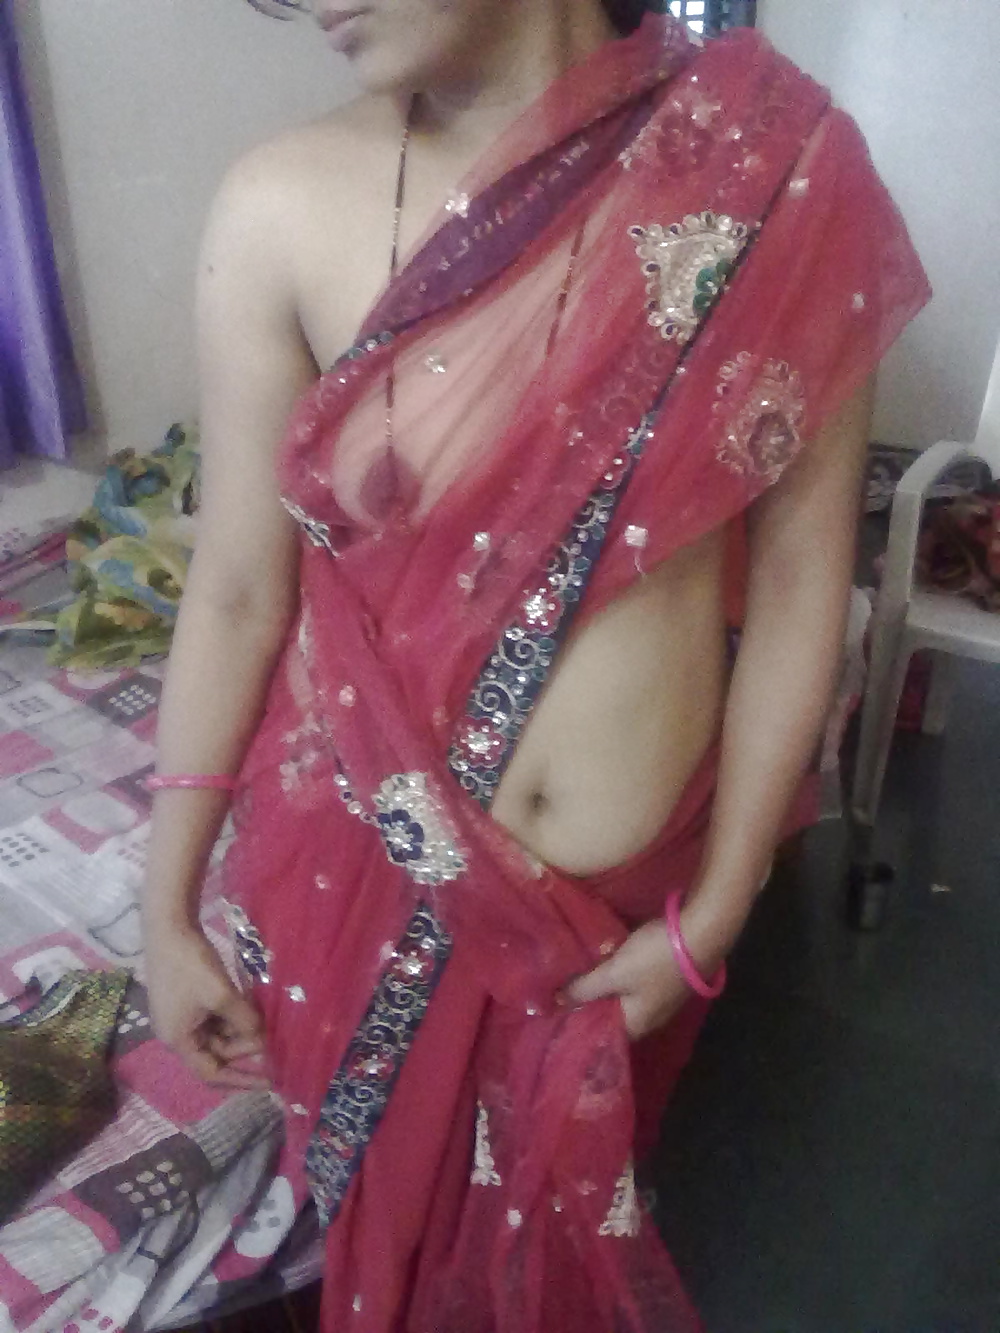 1000px x 1333px - usha_bhabhi5 - Indian Girls Club - Nude Indian Girls & Hot Sexy Indian Babes